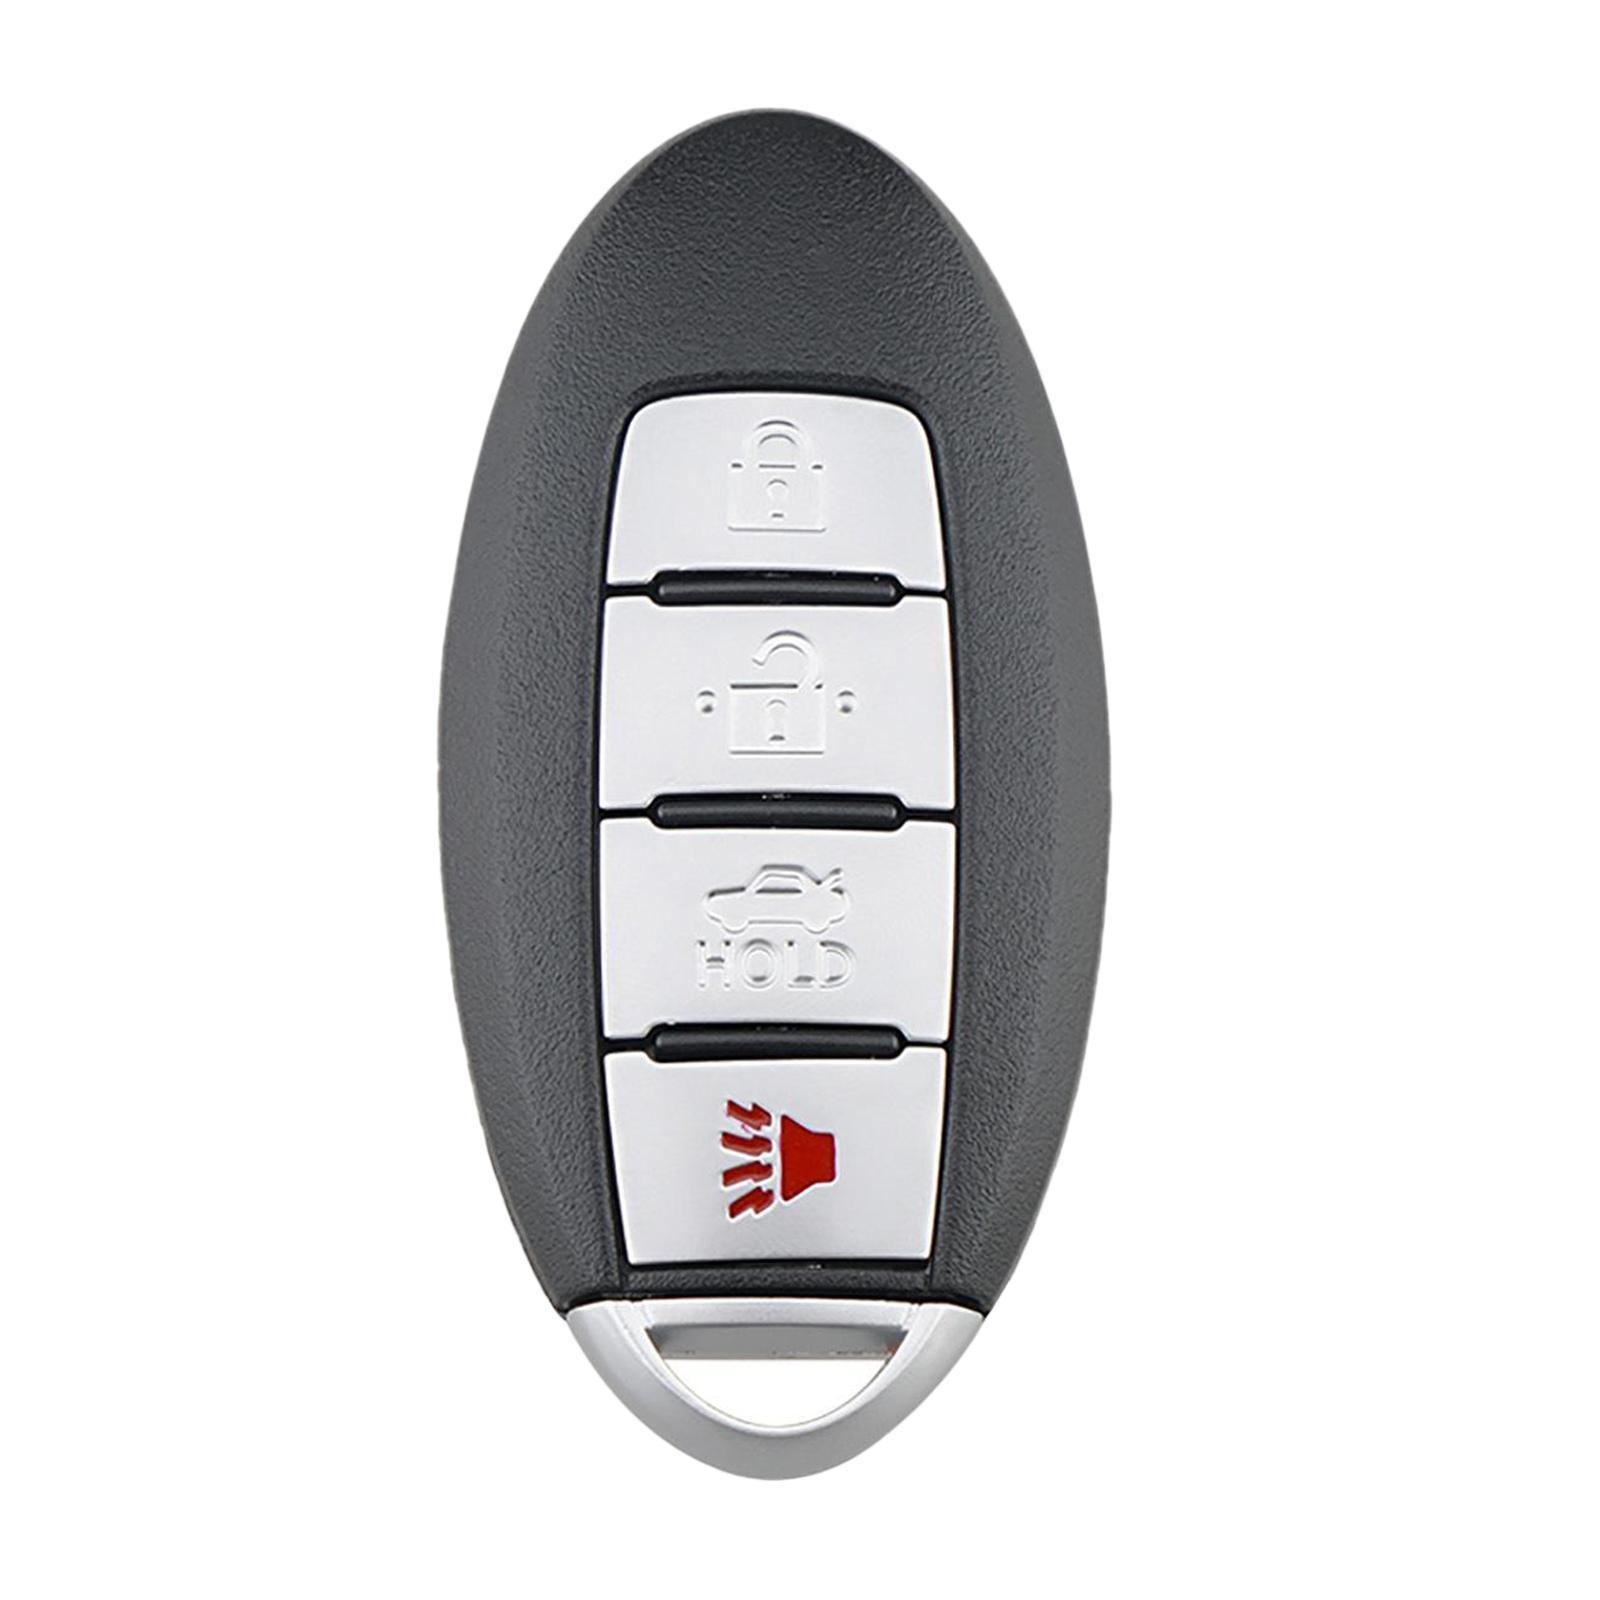 Auto Remote Control -Button Compatible for ARMADA 17-20